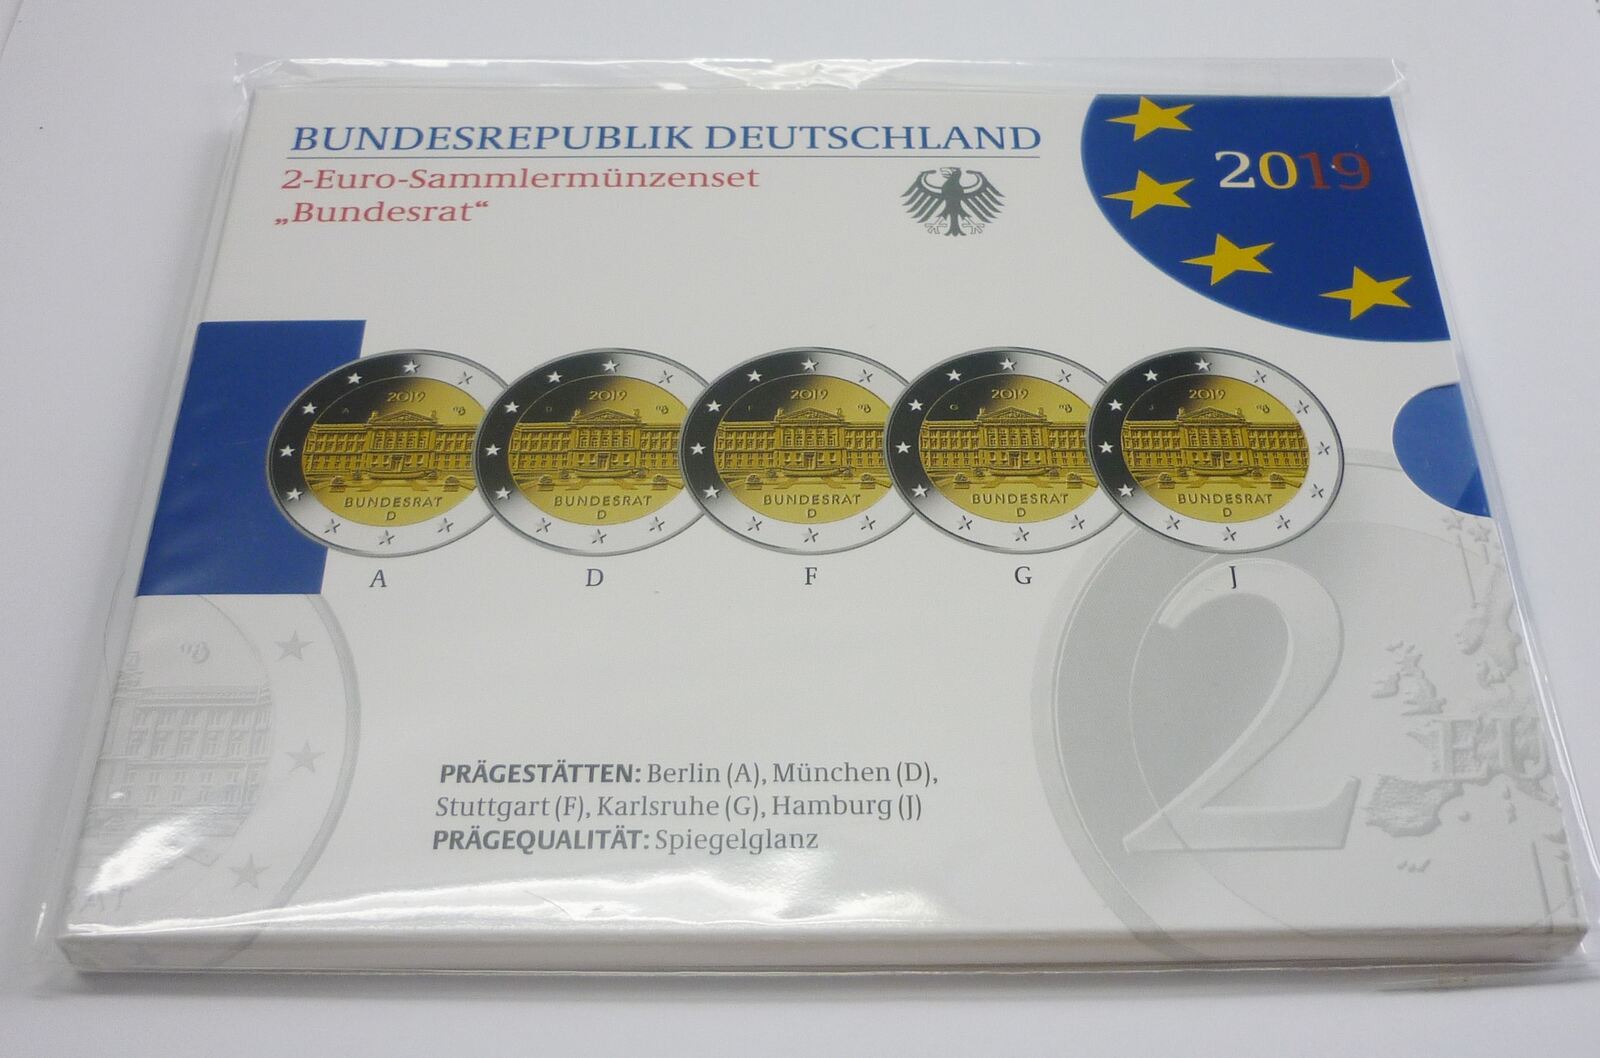 Deutschland Brd Germany 5 X 2 Euro 19 Gedenkmunzen Set A D F G J Bundesrat Proof Im Blister Mit Schuber Originalverpackung Ma Shops